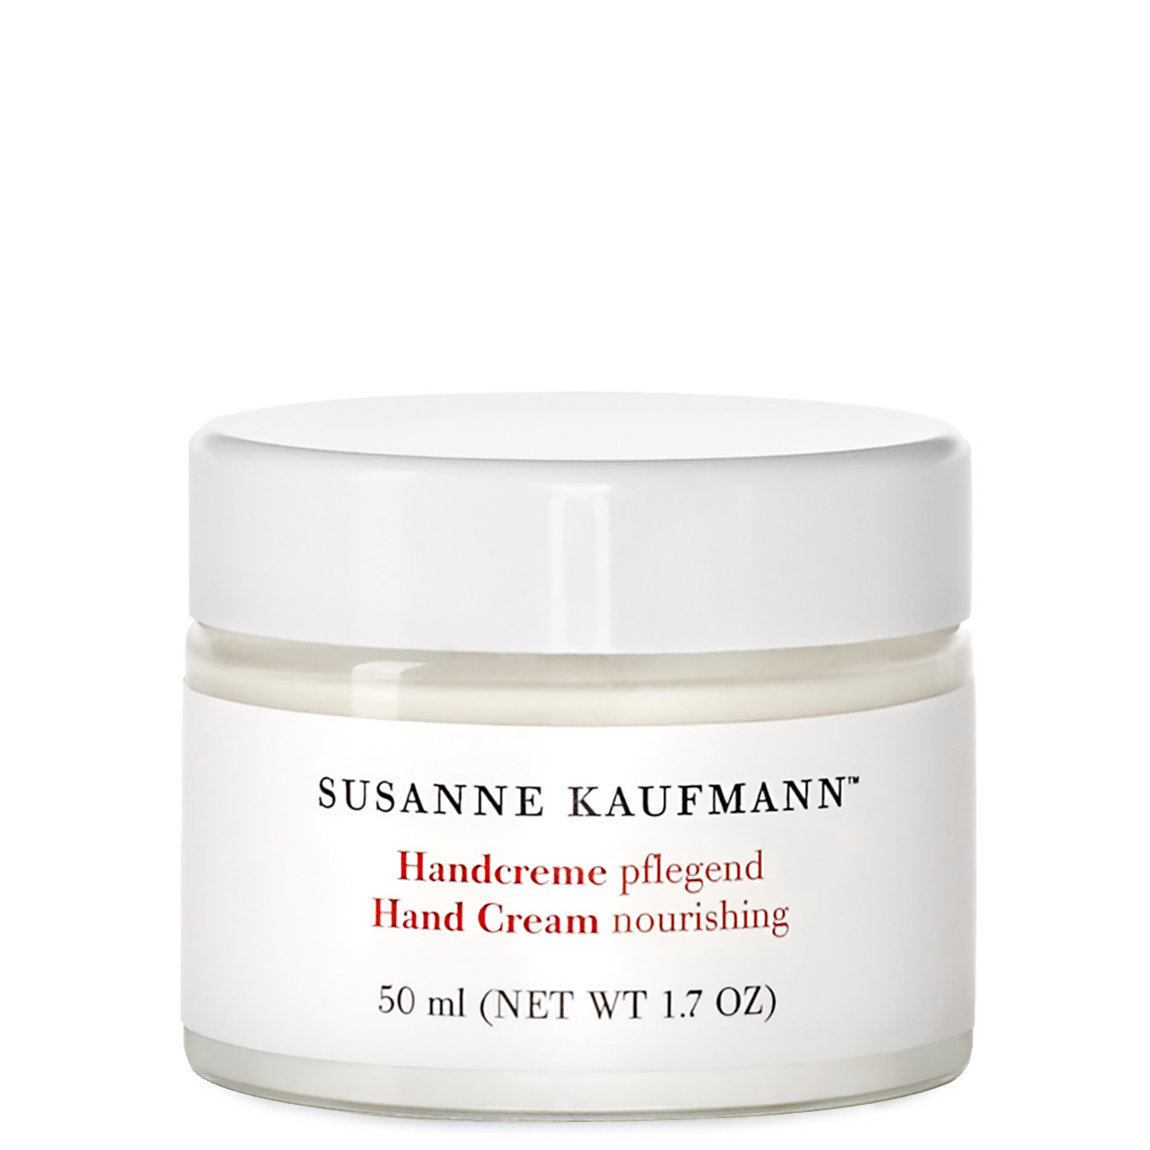 Susanne Kaufmann Hand Cream Nourishing alternative view 1 - product swatch.